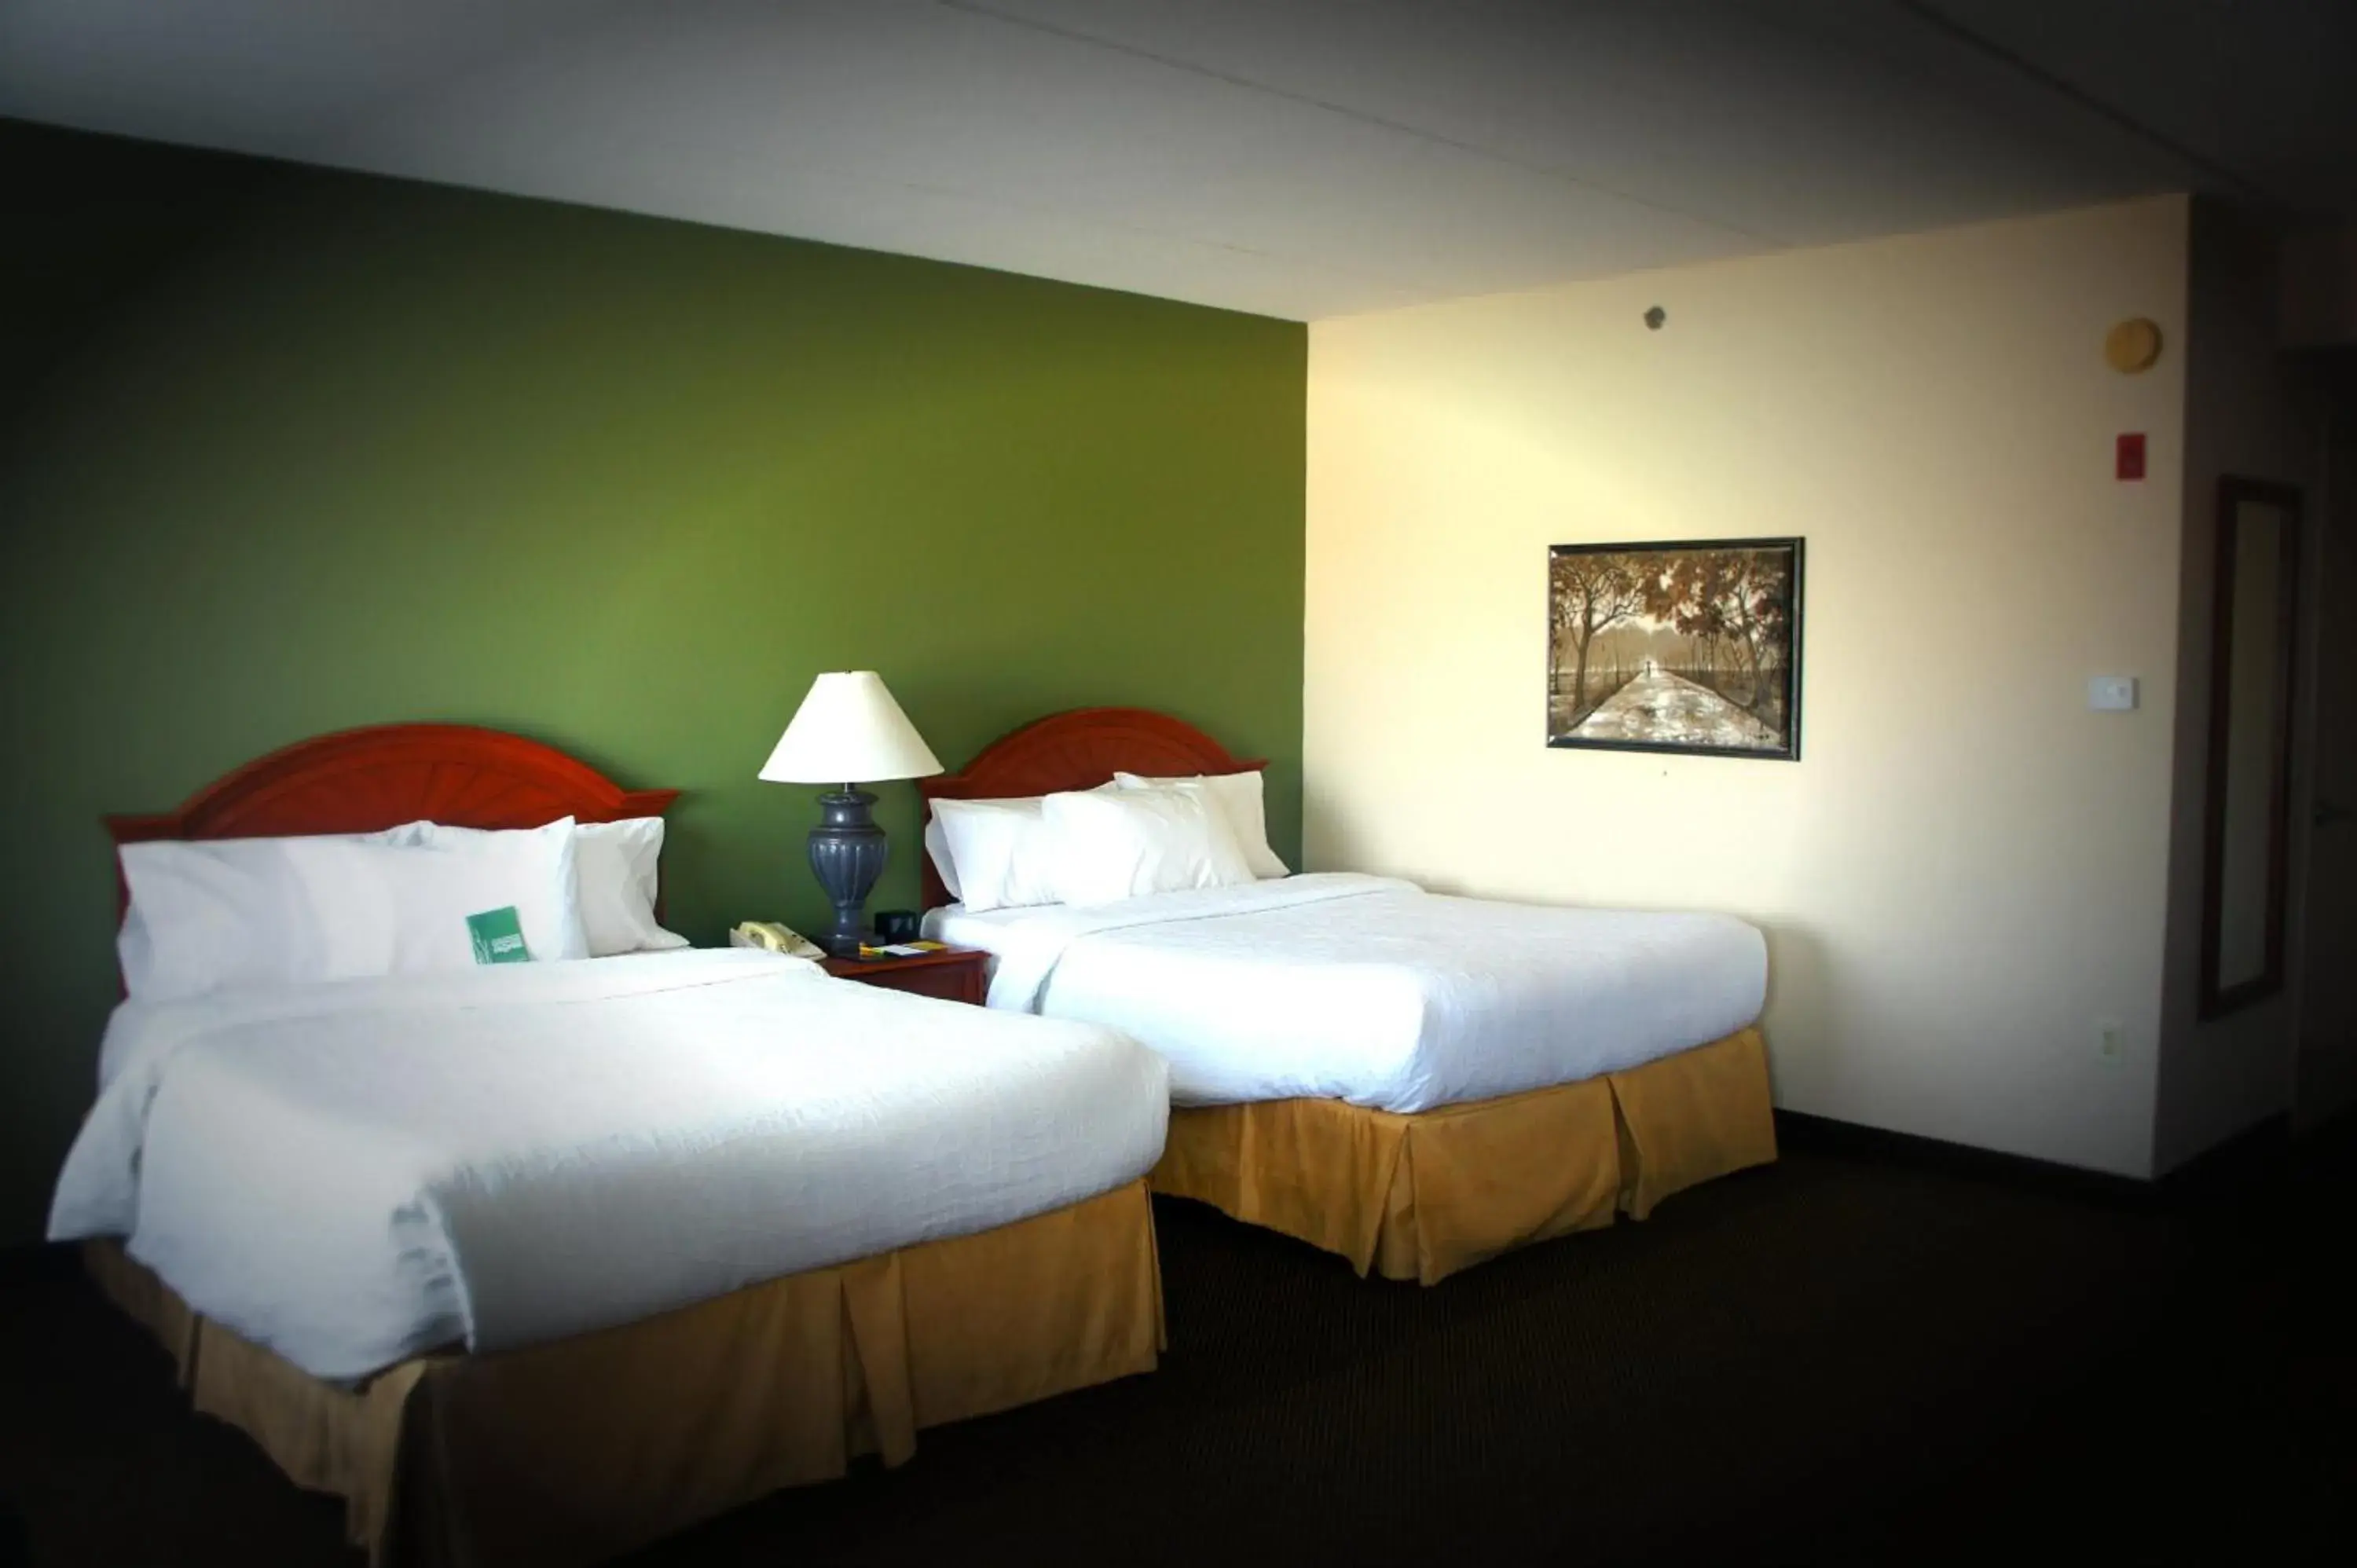 Bed in Hilton Garden Inn Green Bay